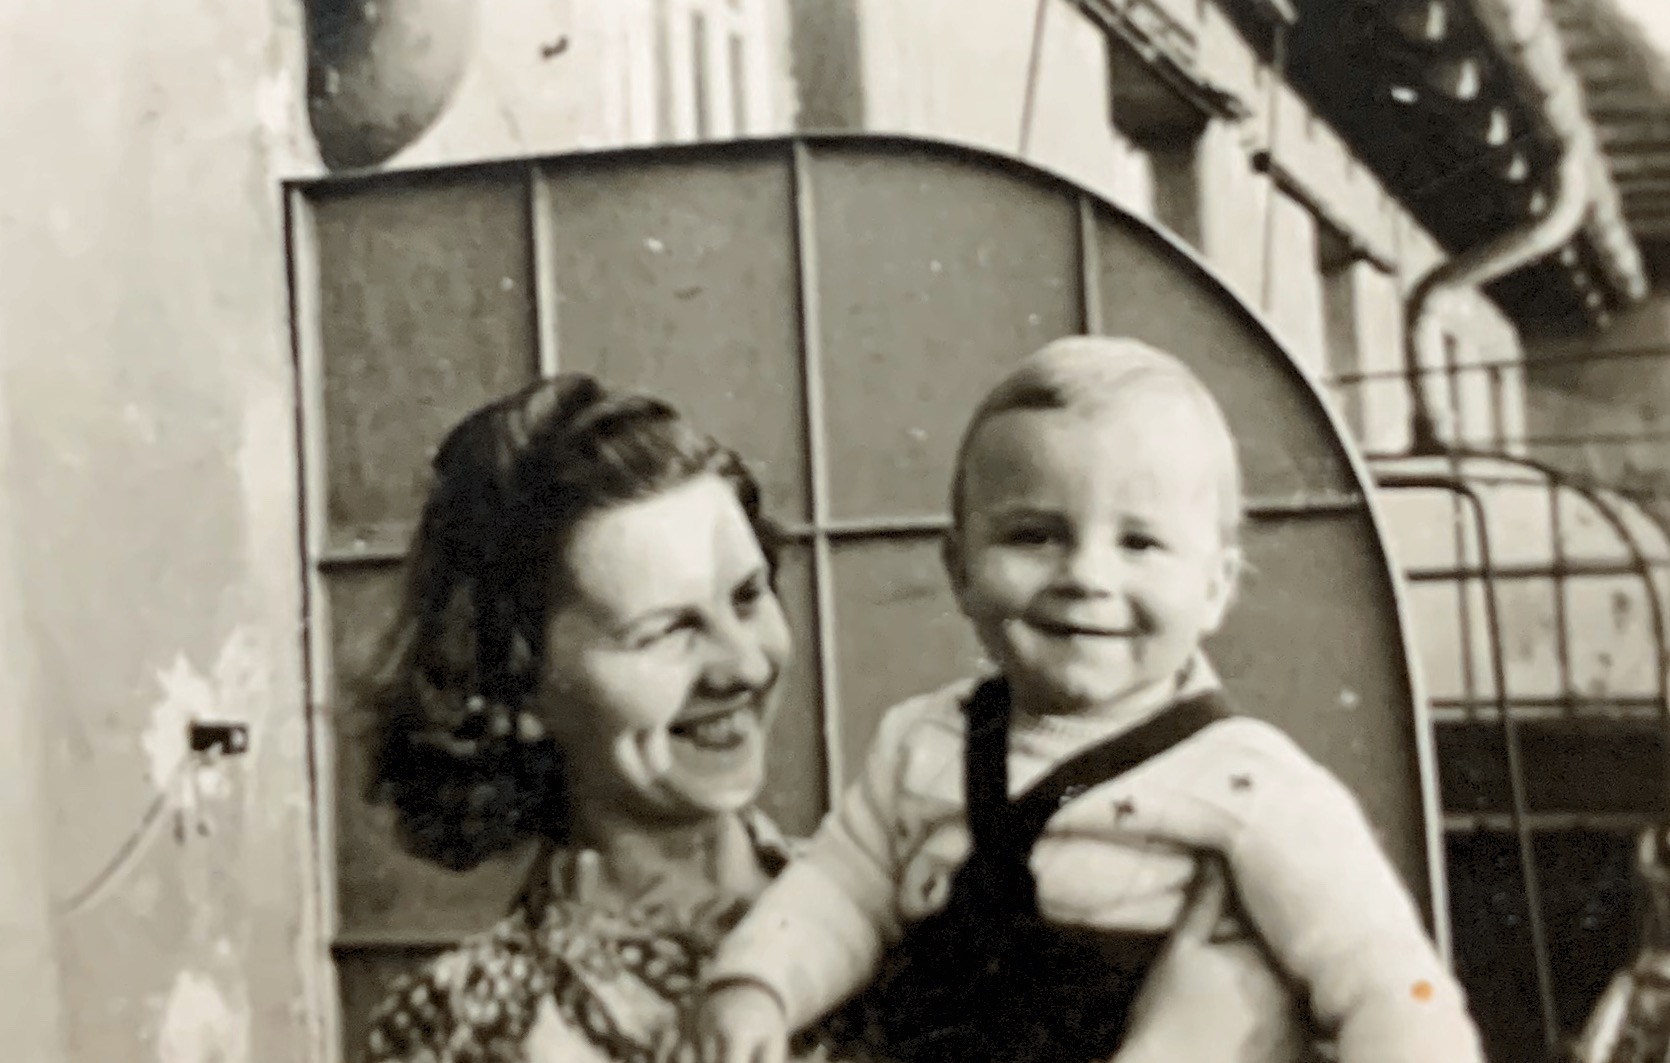 Oma & Dad (Bernie) approx 1942